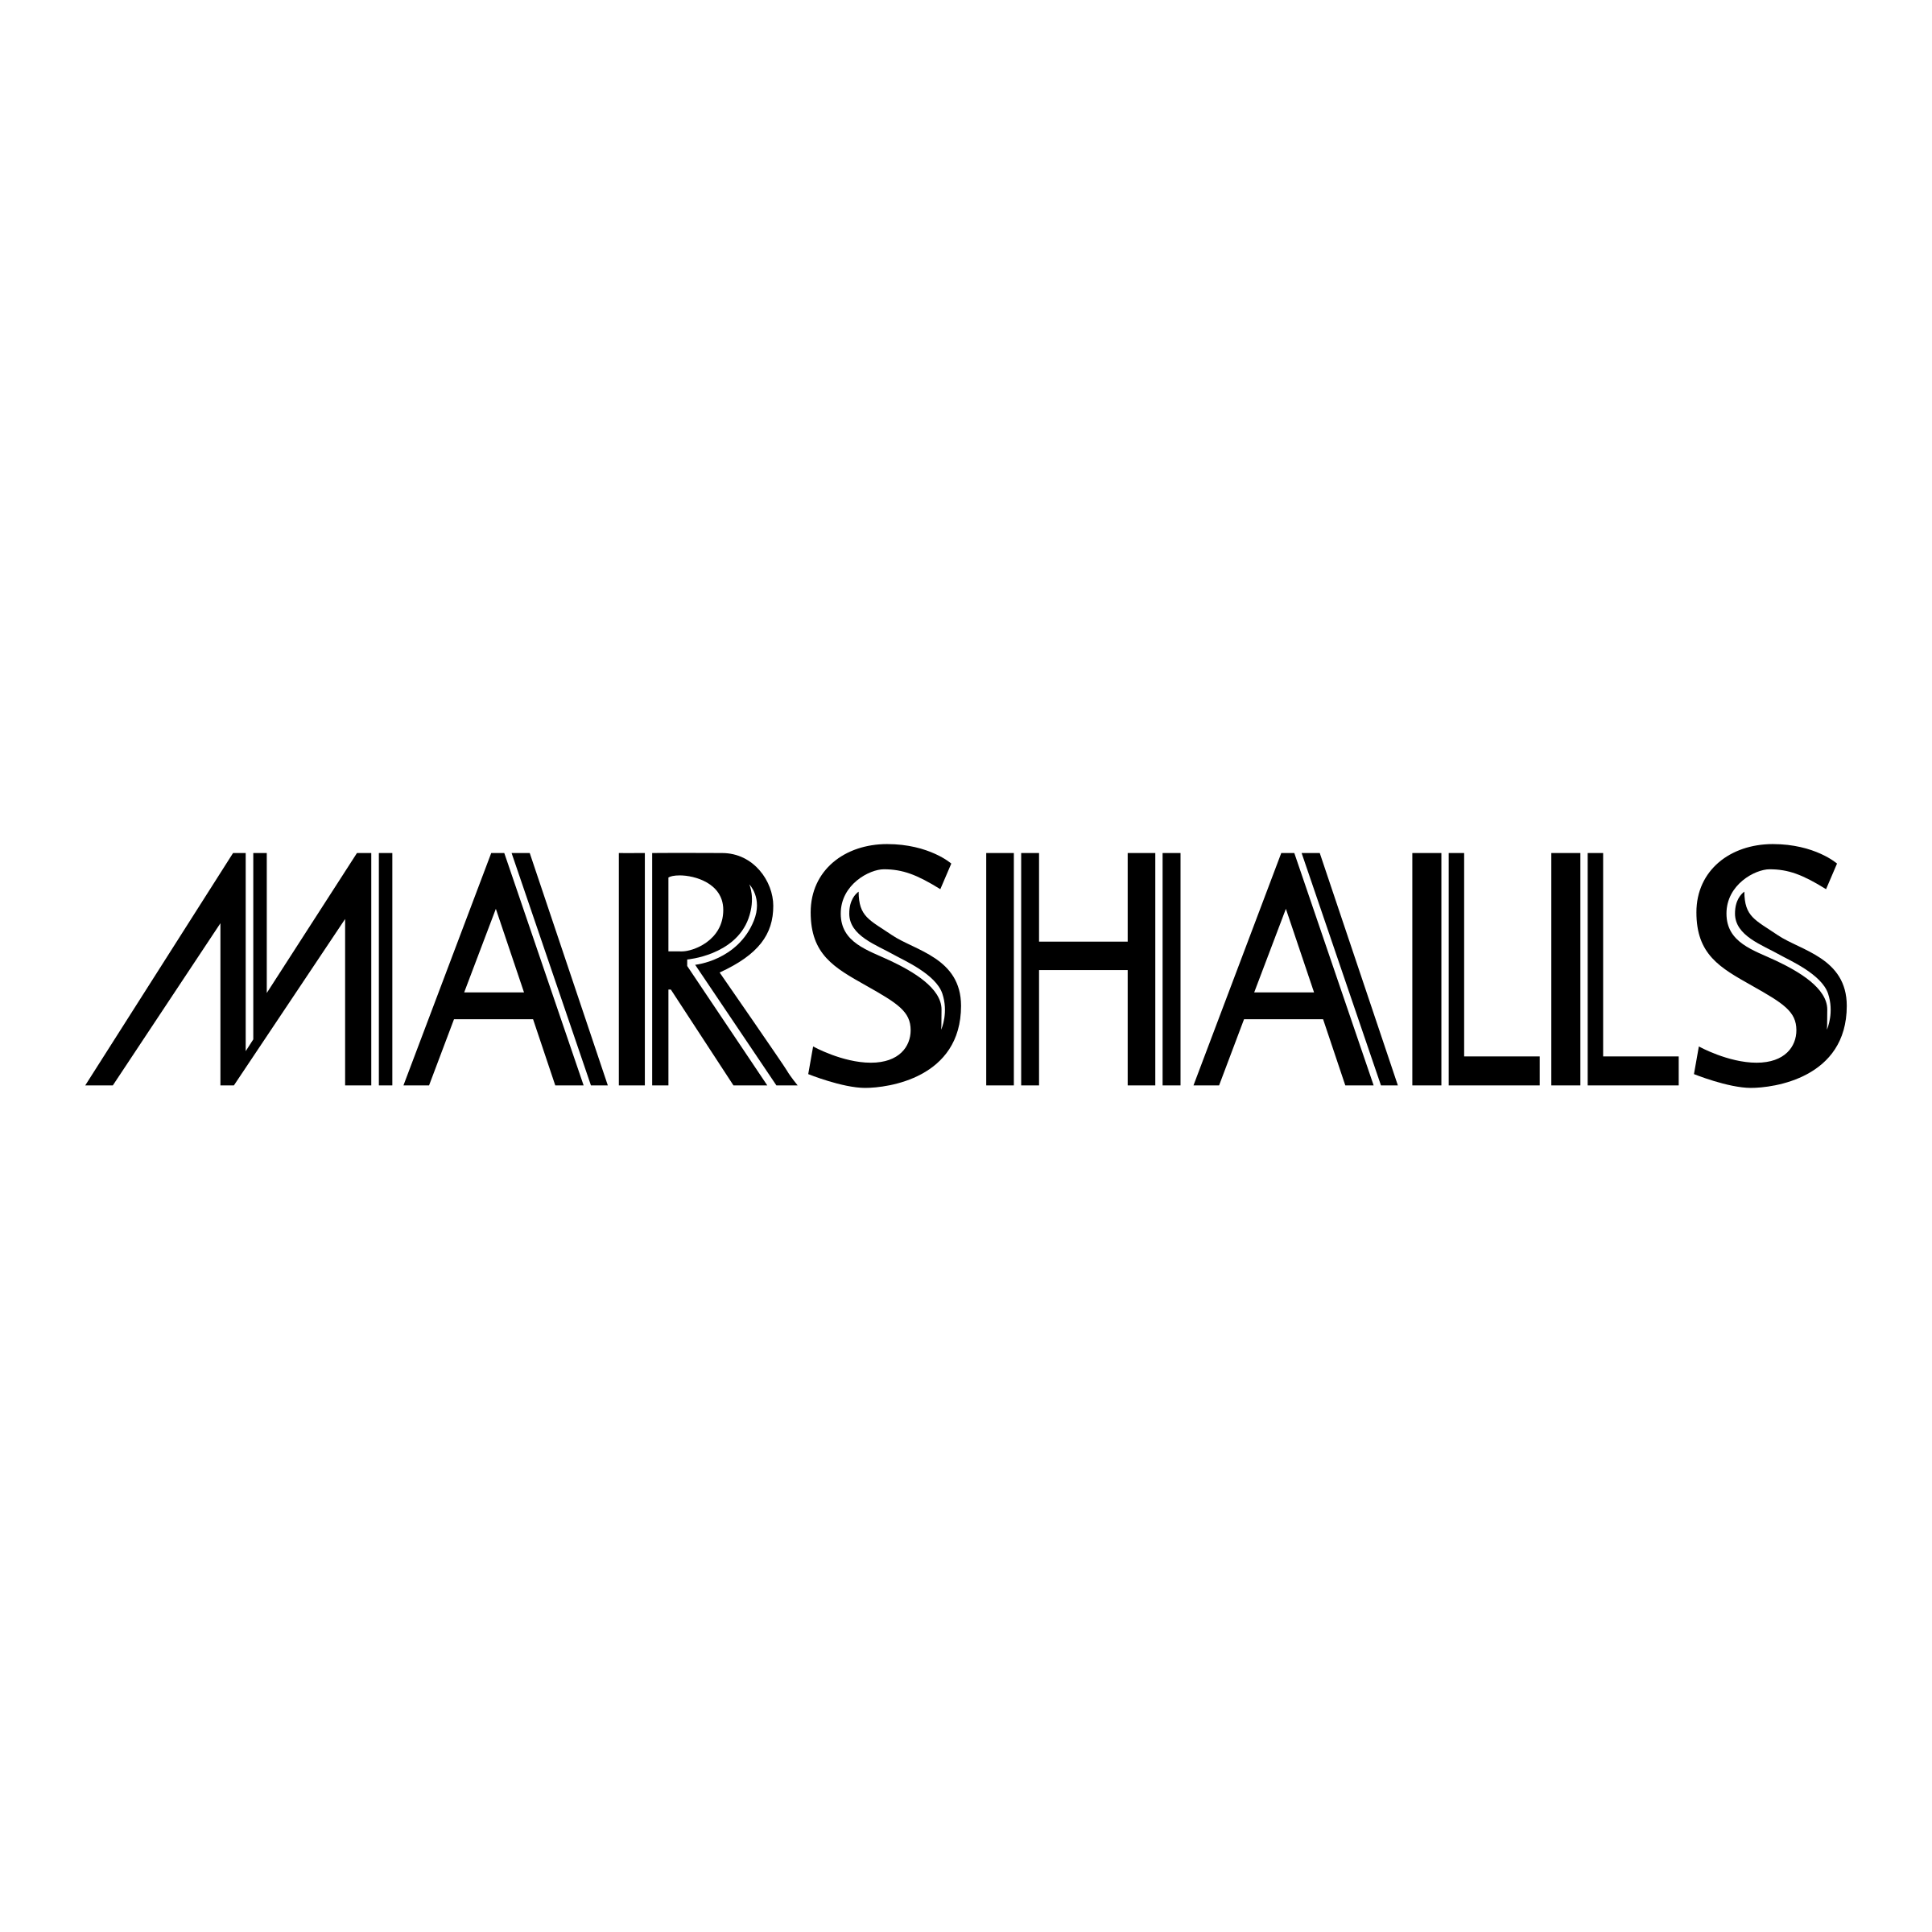 Marshalls Logo - Marshalls Logo PNG Transparent & SVG Vector - Freebie Supply